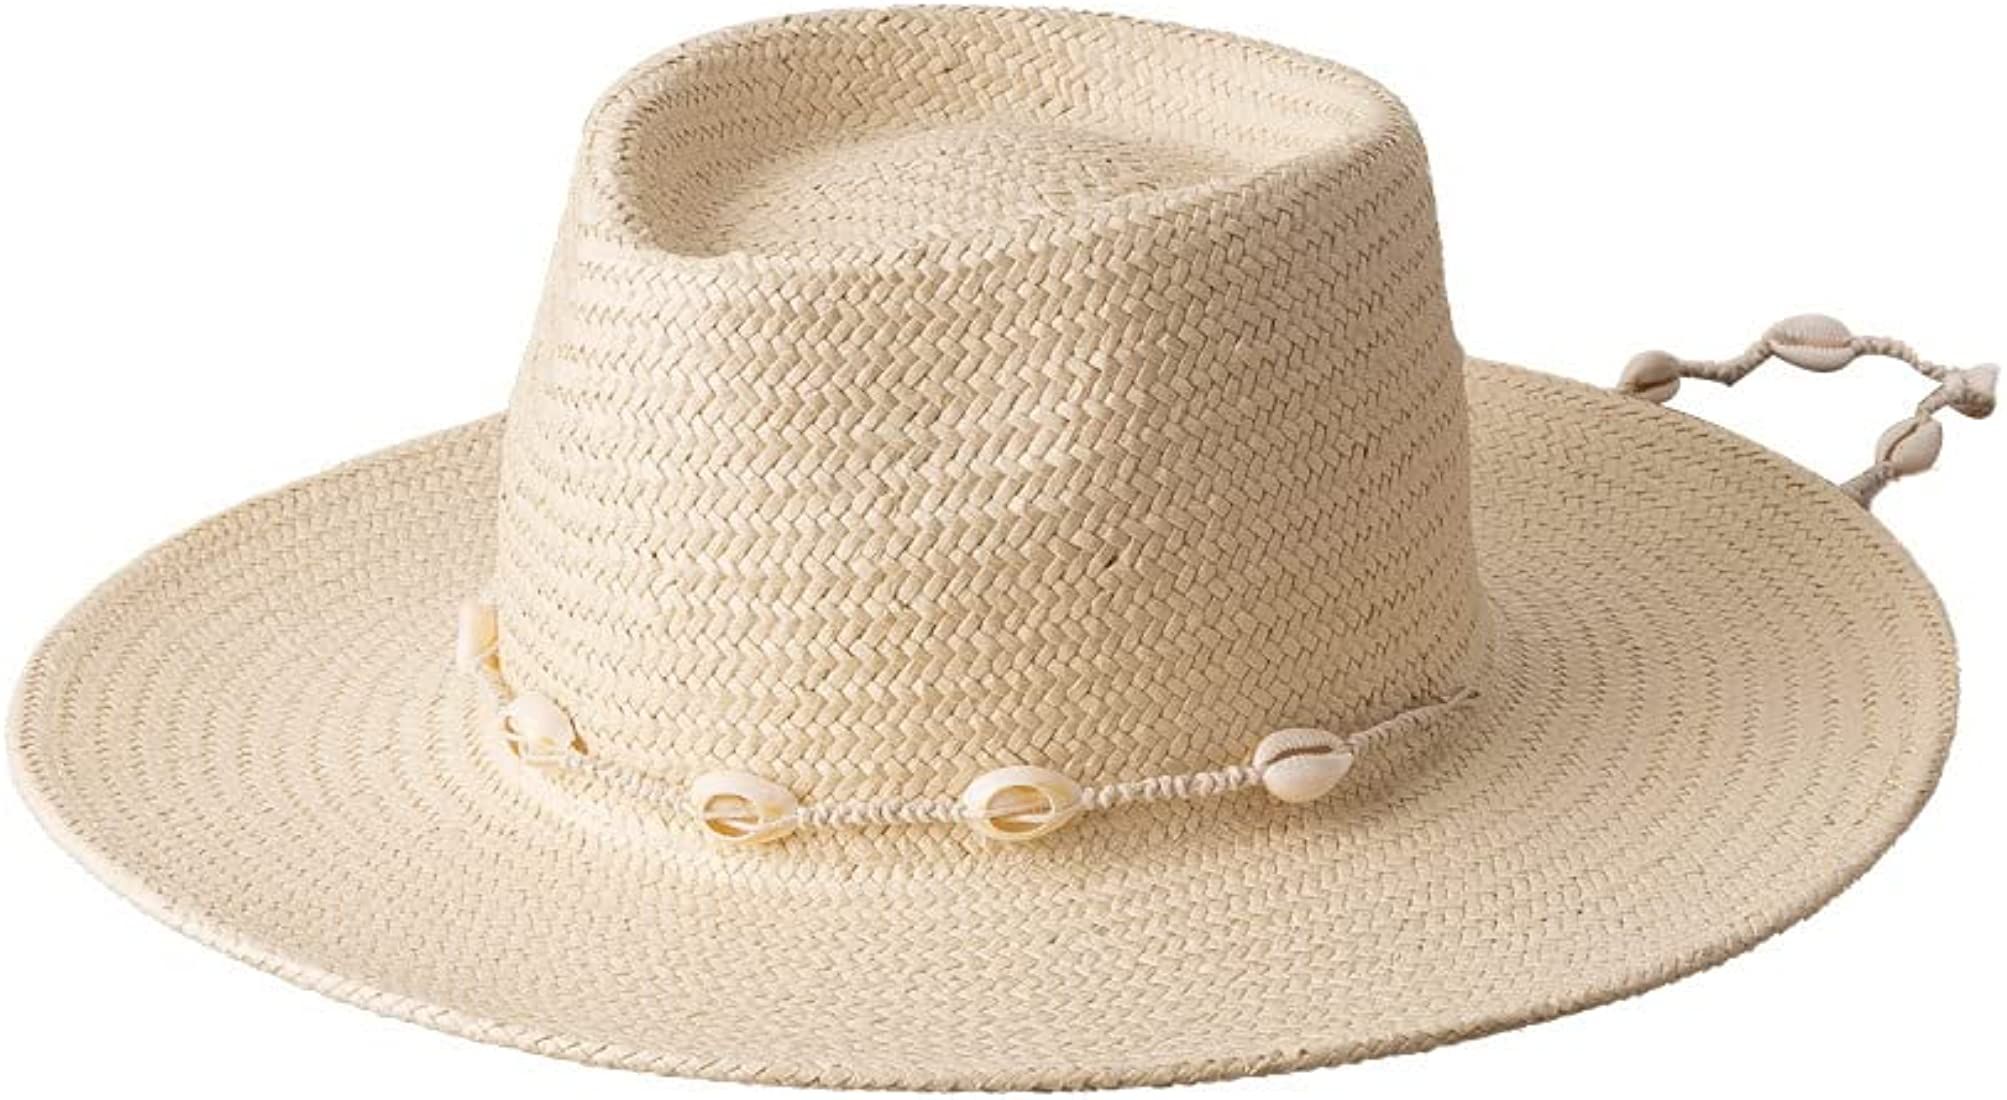 Seashell beach hat | Amazon (US)